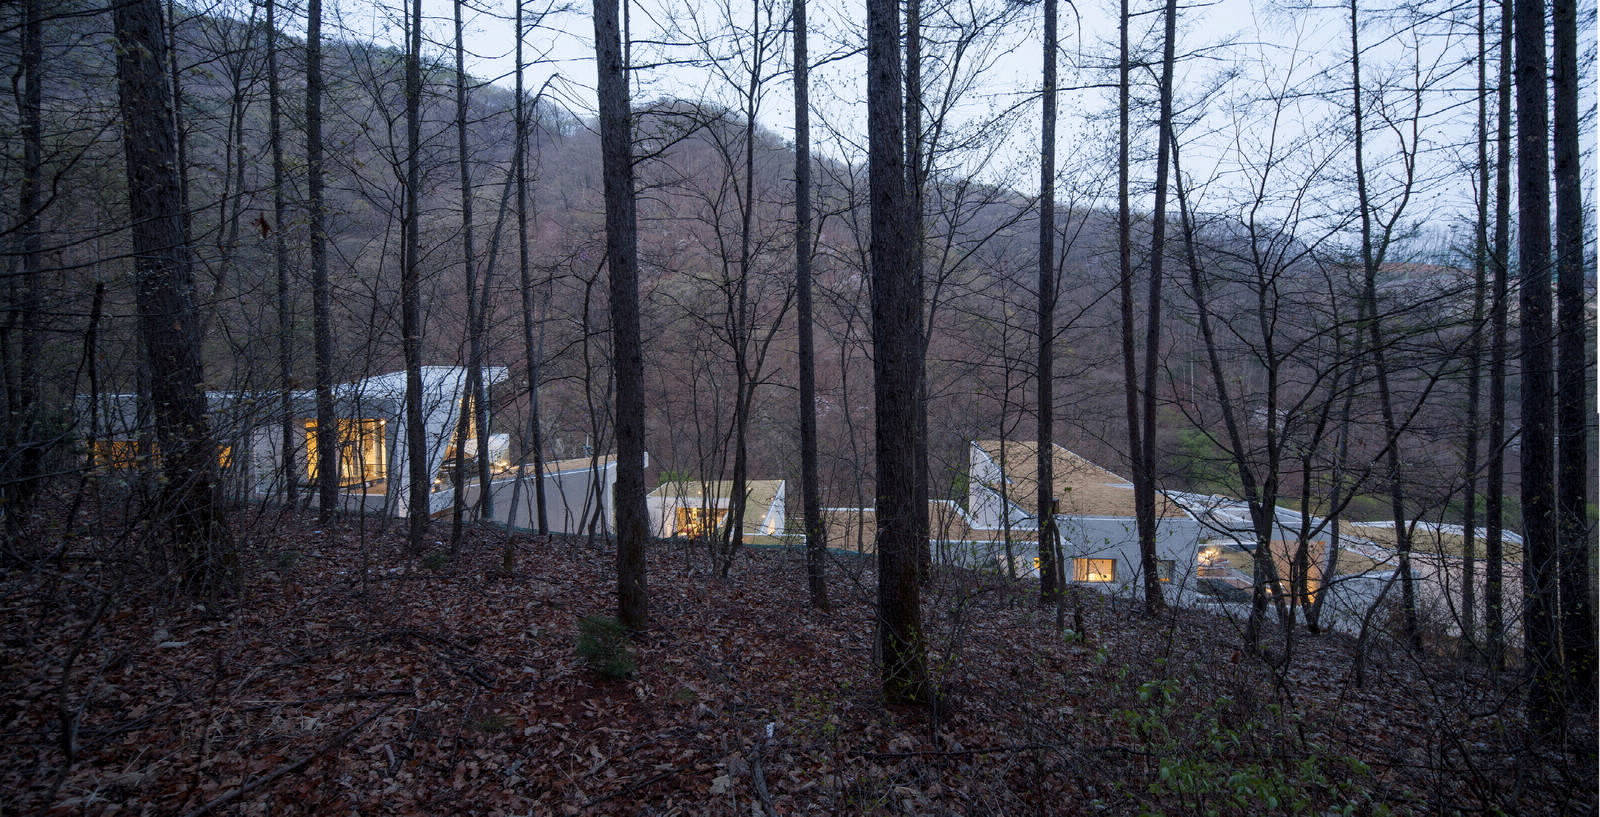 Гармония с природой в проекте резиденции в Южной Корее